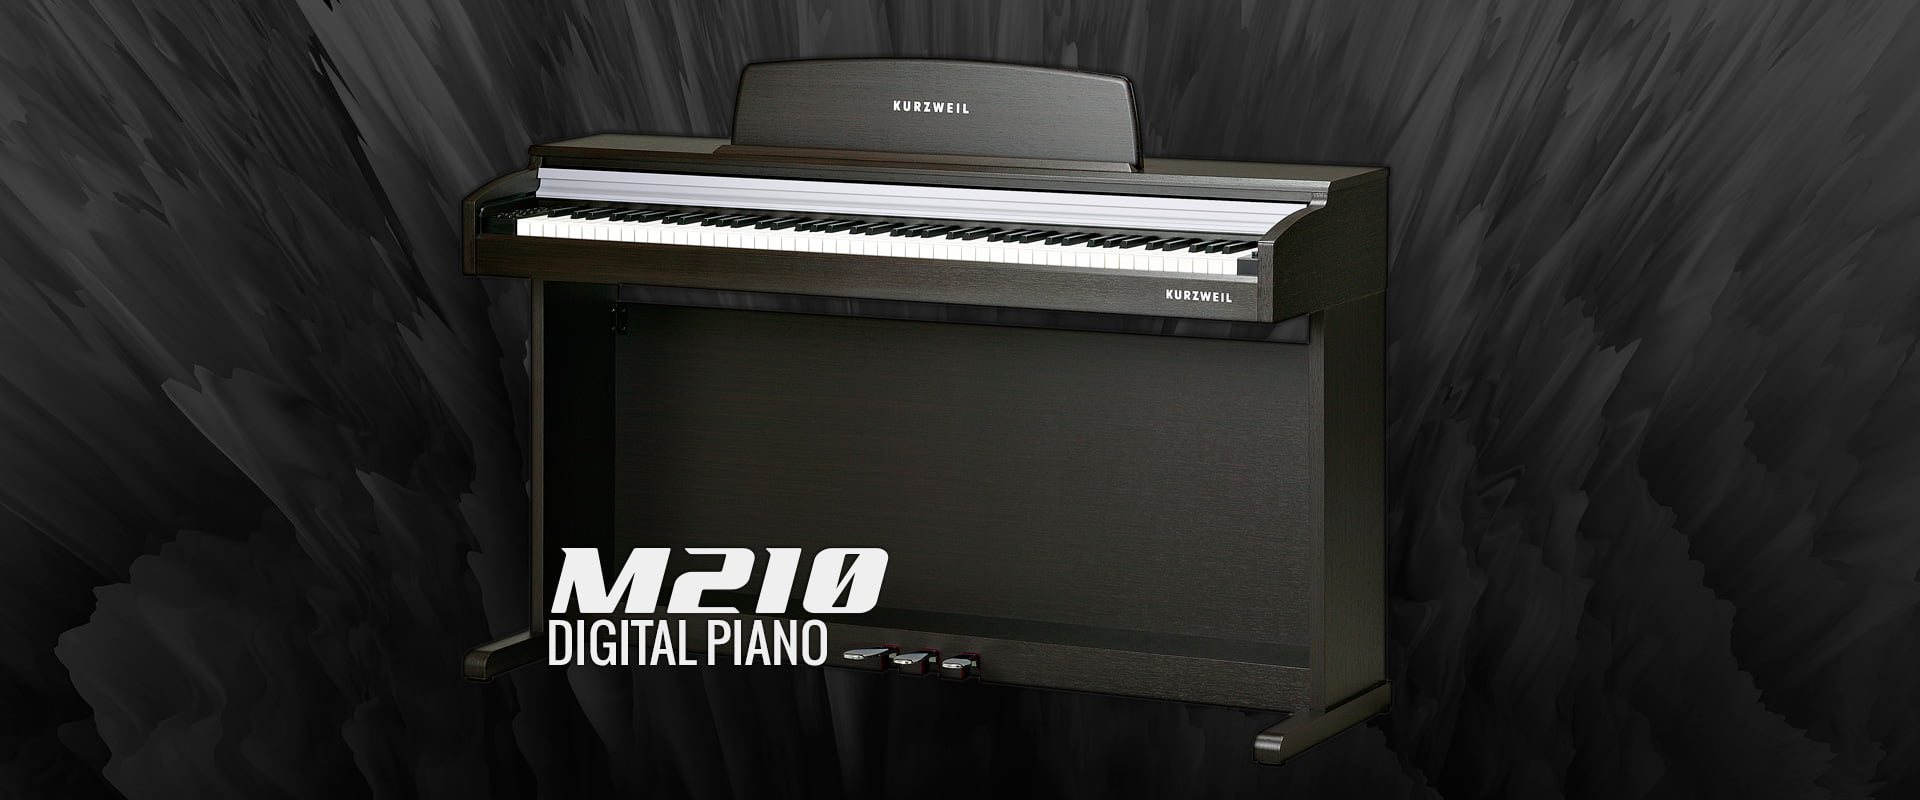 طراحی بدنه پیانو کورزویل ام 210